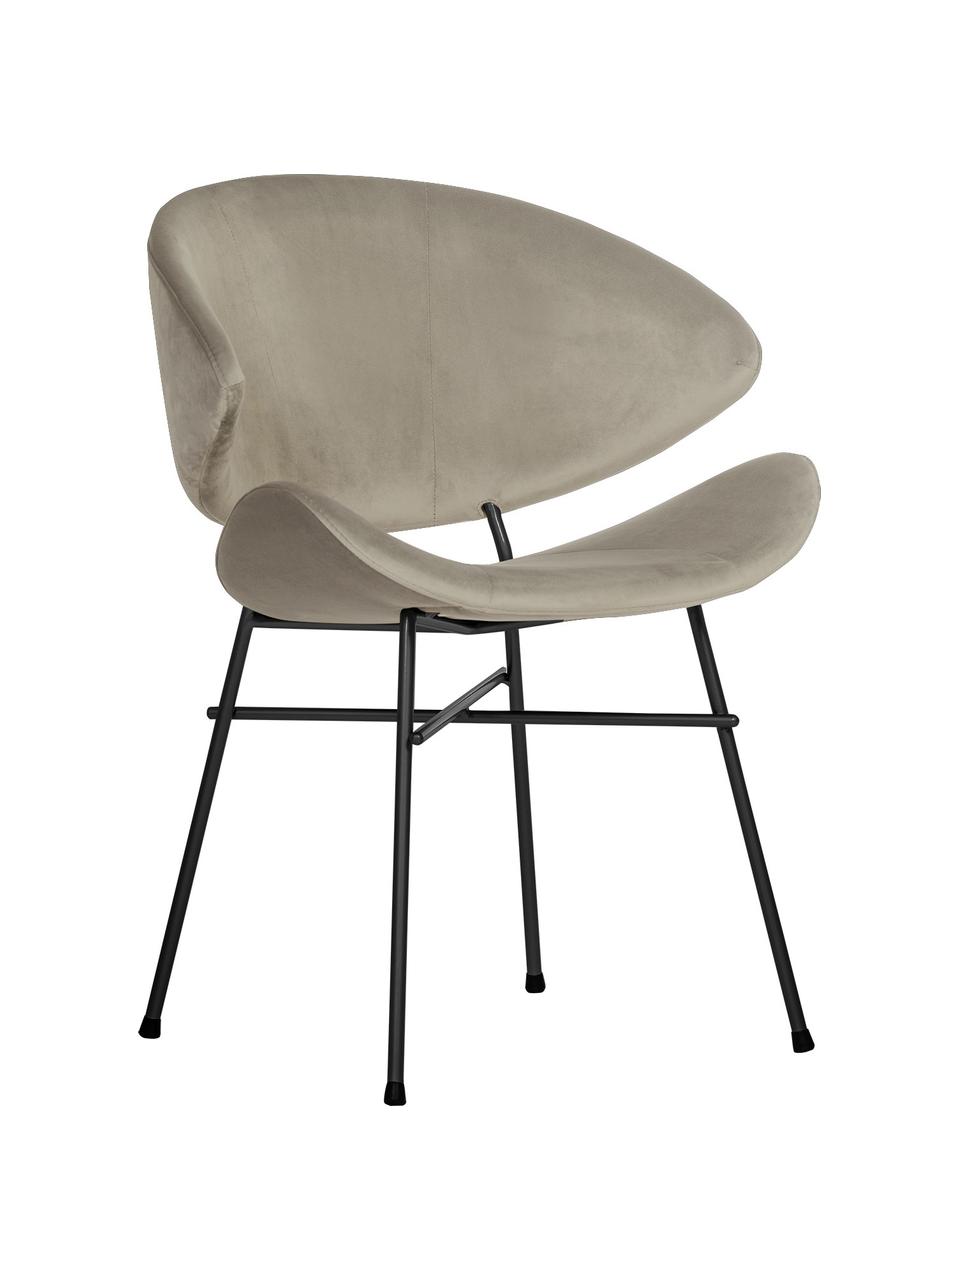 Krzesło tapicerowane z weluru Cheri, Tapicerka: 100% poliester (welur), Stelaż: stal malowana proszkowo, Beżowa tkanina, S 57 x G 55 cm